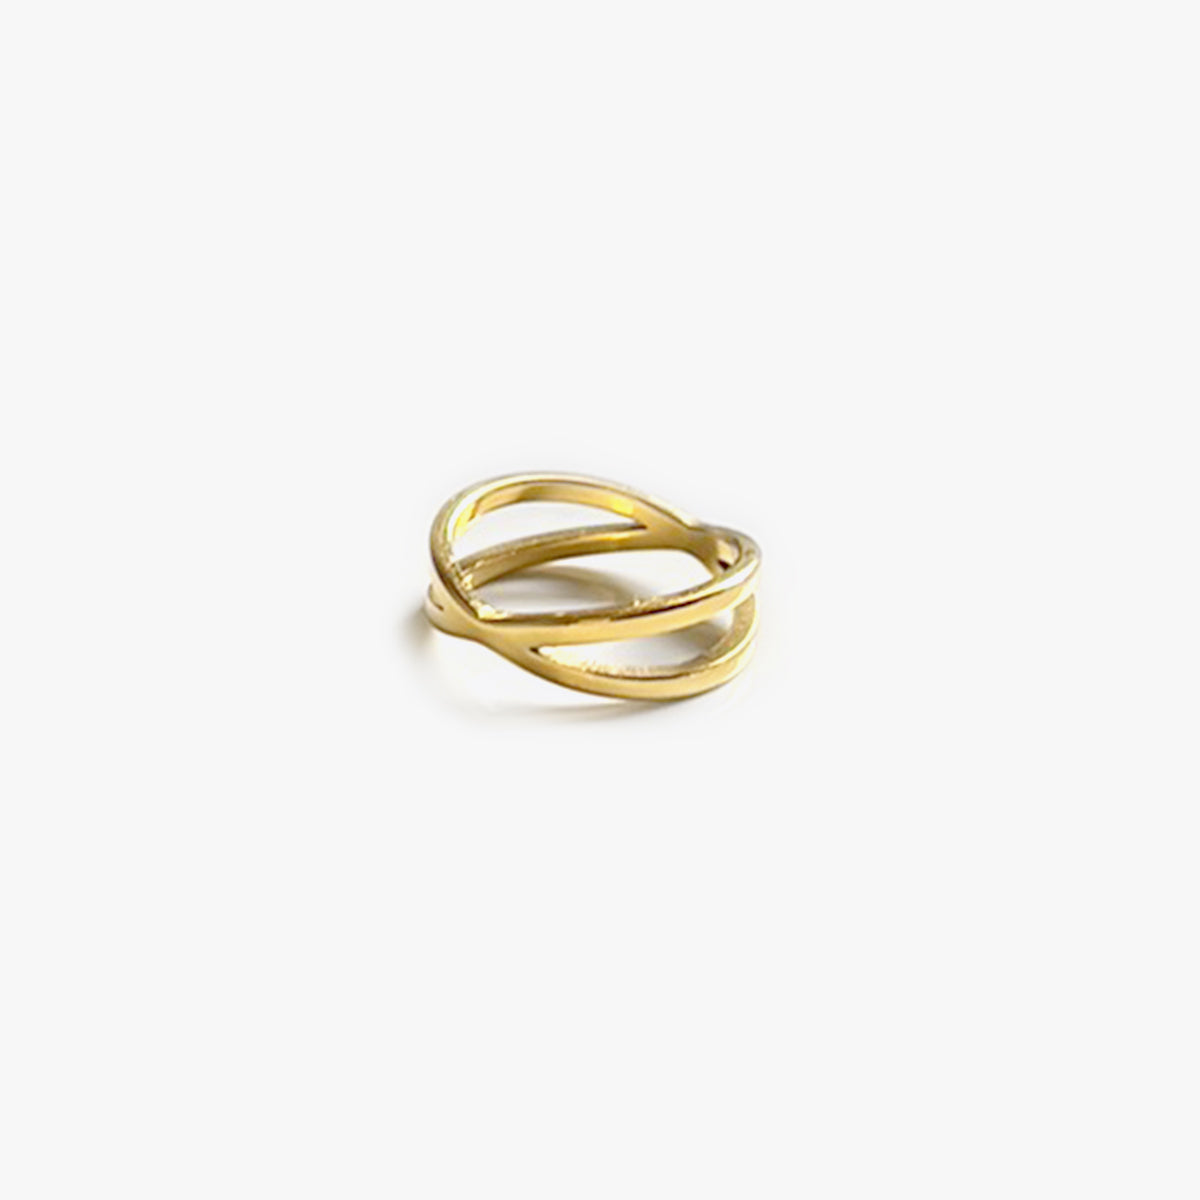 The Crissa Bare Ring